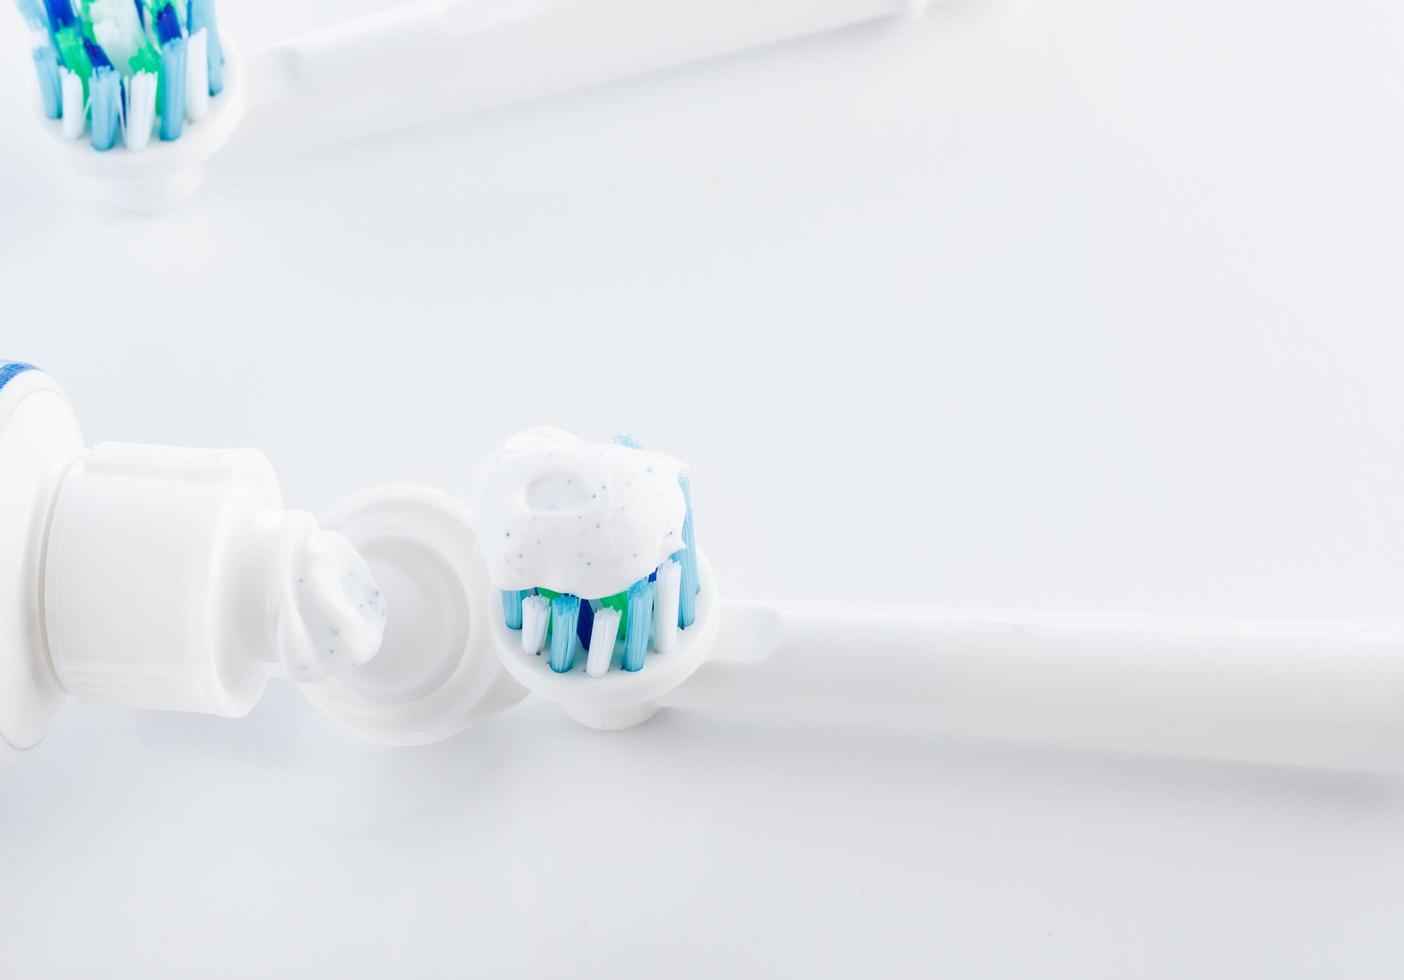 hygiène bucco-dentaire, brosse à dents, dentifrice soins dentaires professionnels photo